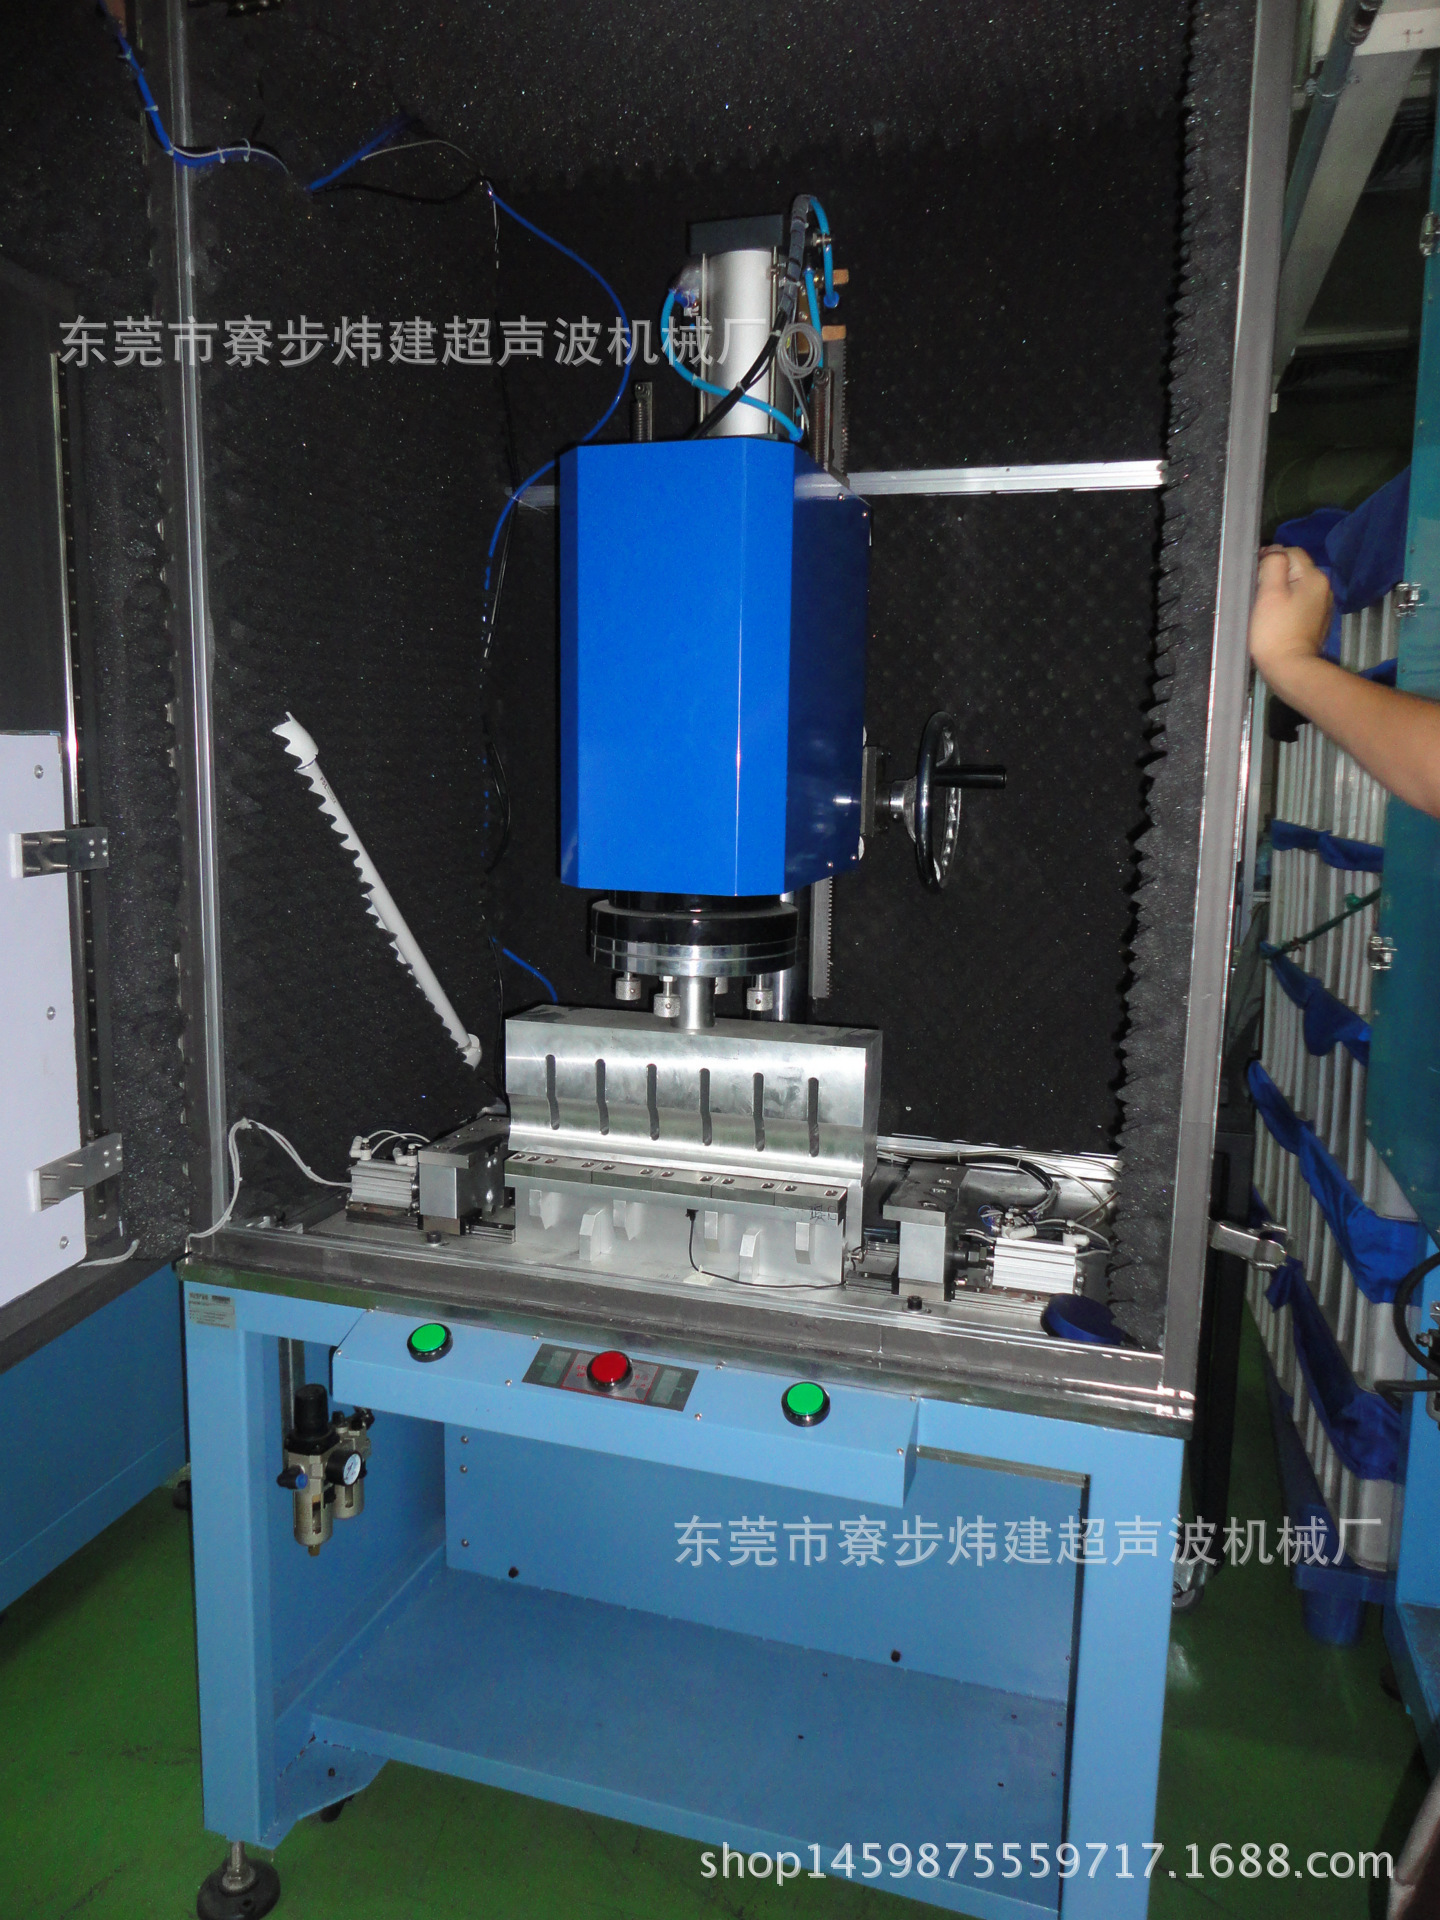 东莞炜建超音波熔接机械厂产销湖南超声波焊接设备、模具加工示例图13